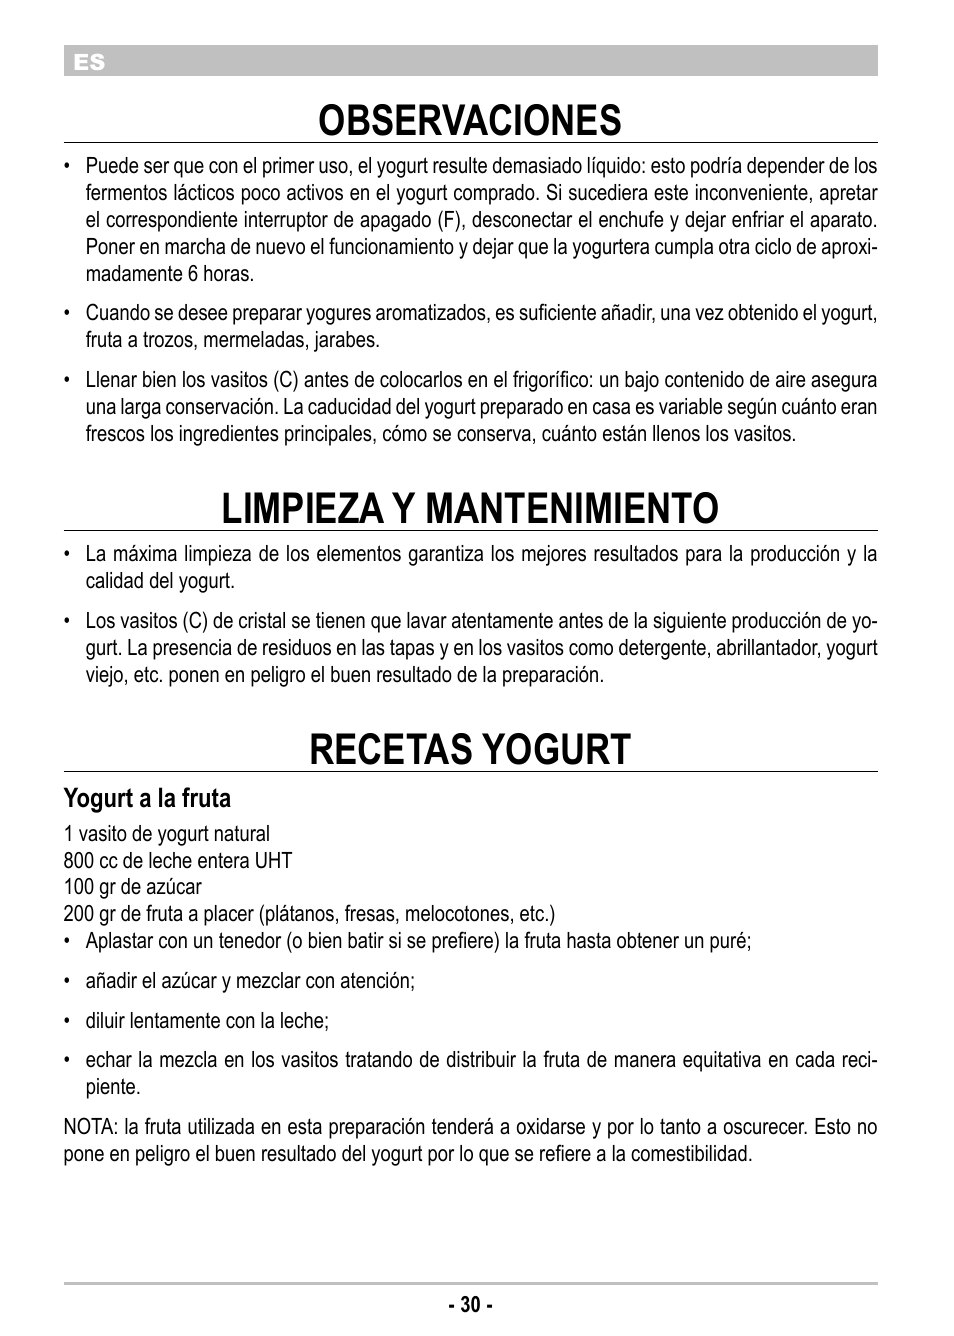 Observaciones, Limpieza y mantenimiento, Recetas yogurt | ARIETE Yogurella Metal 620 User Manual | Page 32 / 62